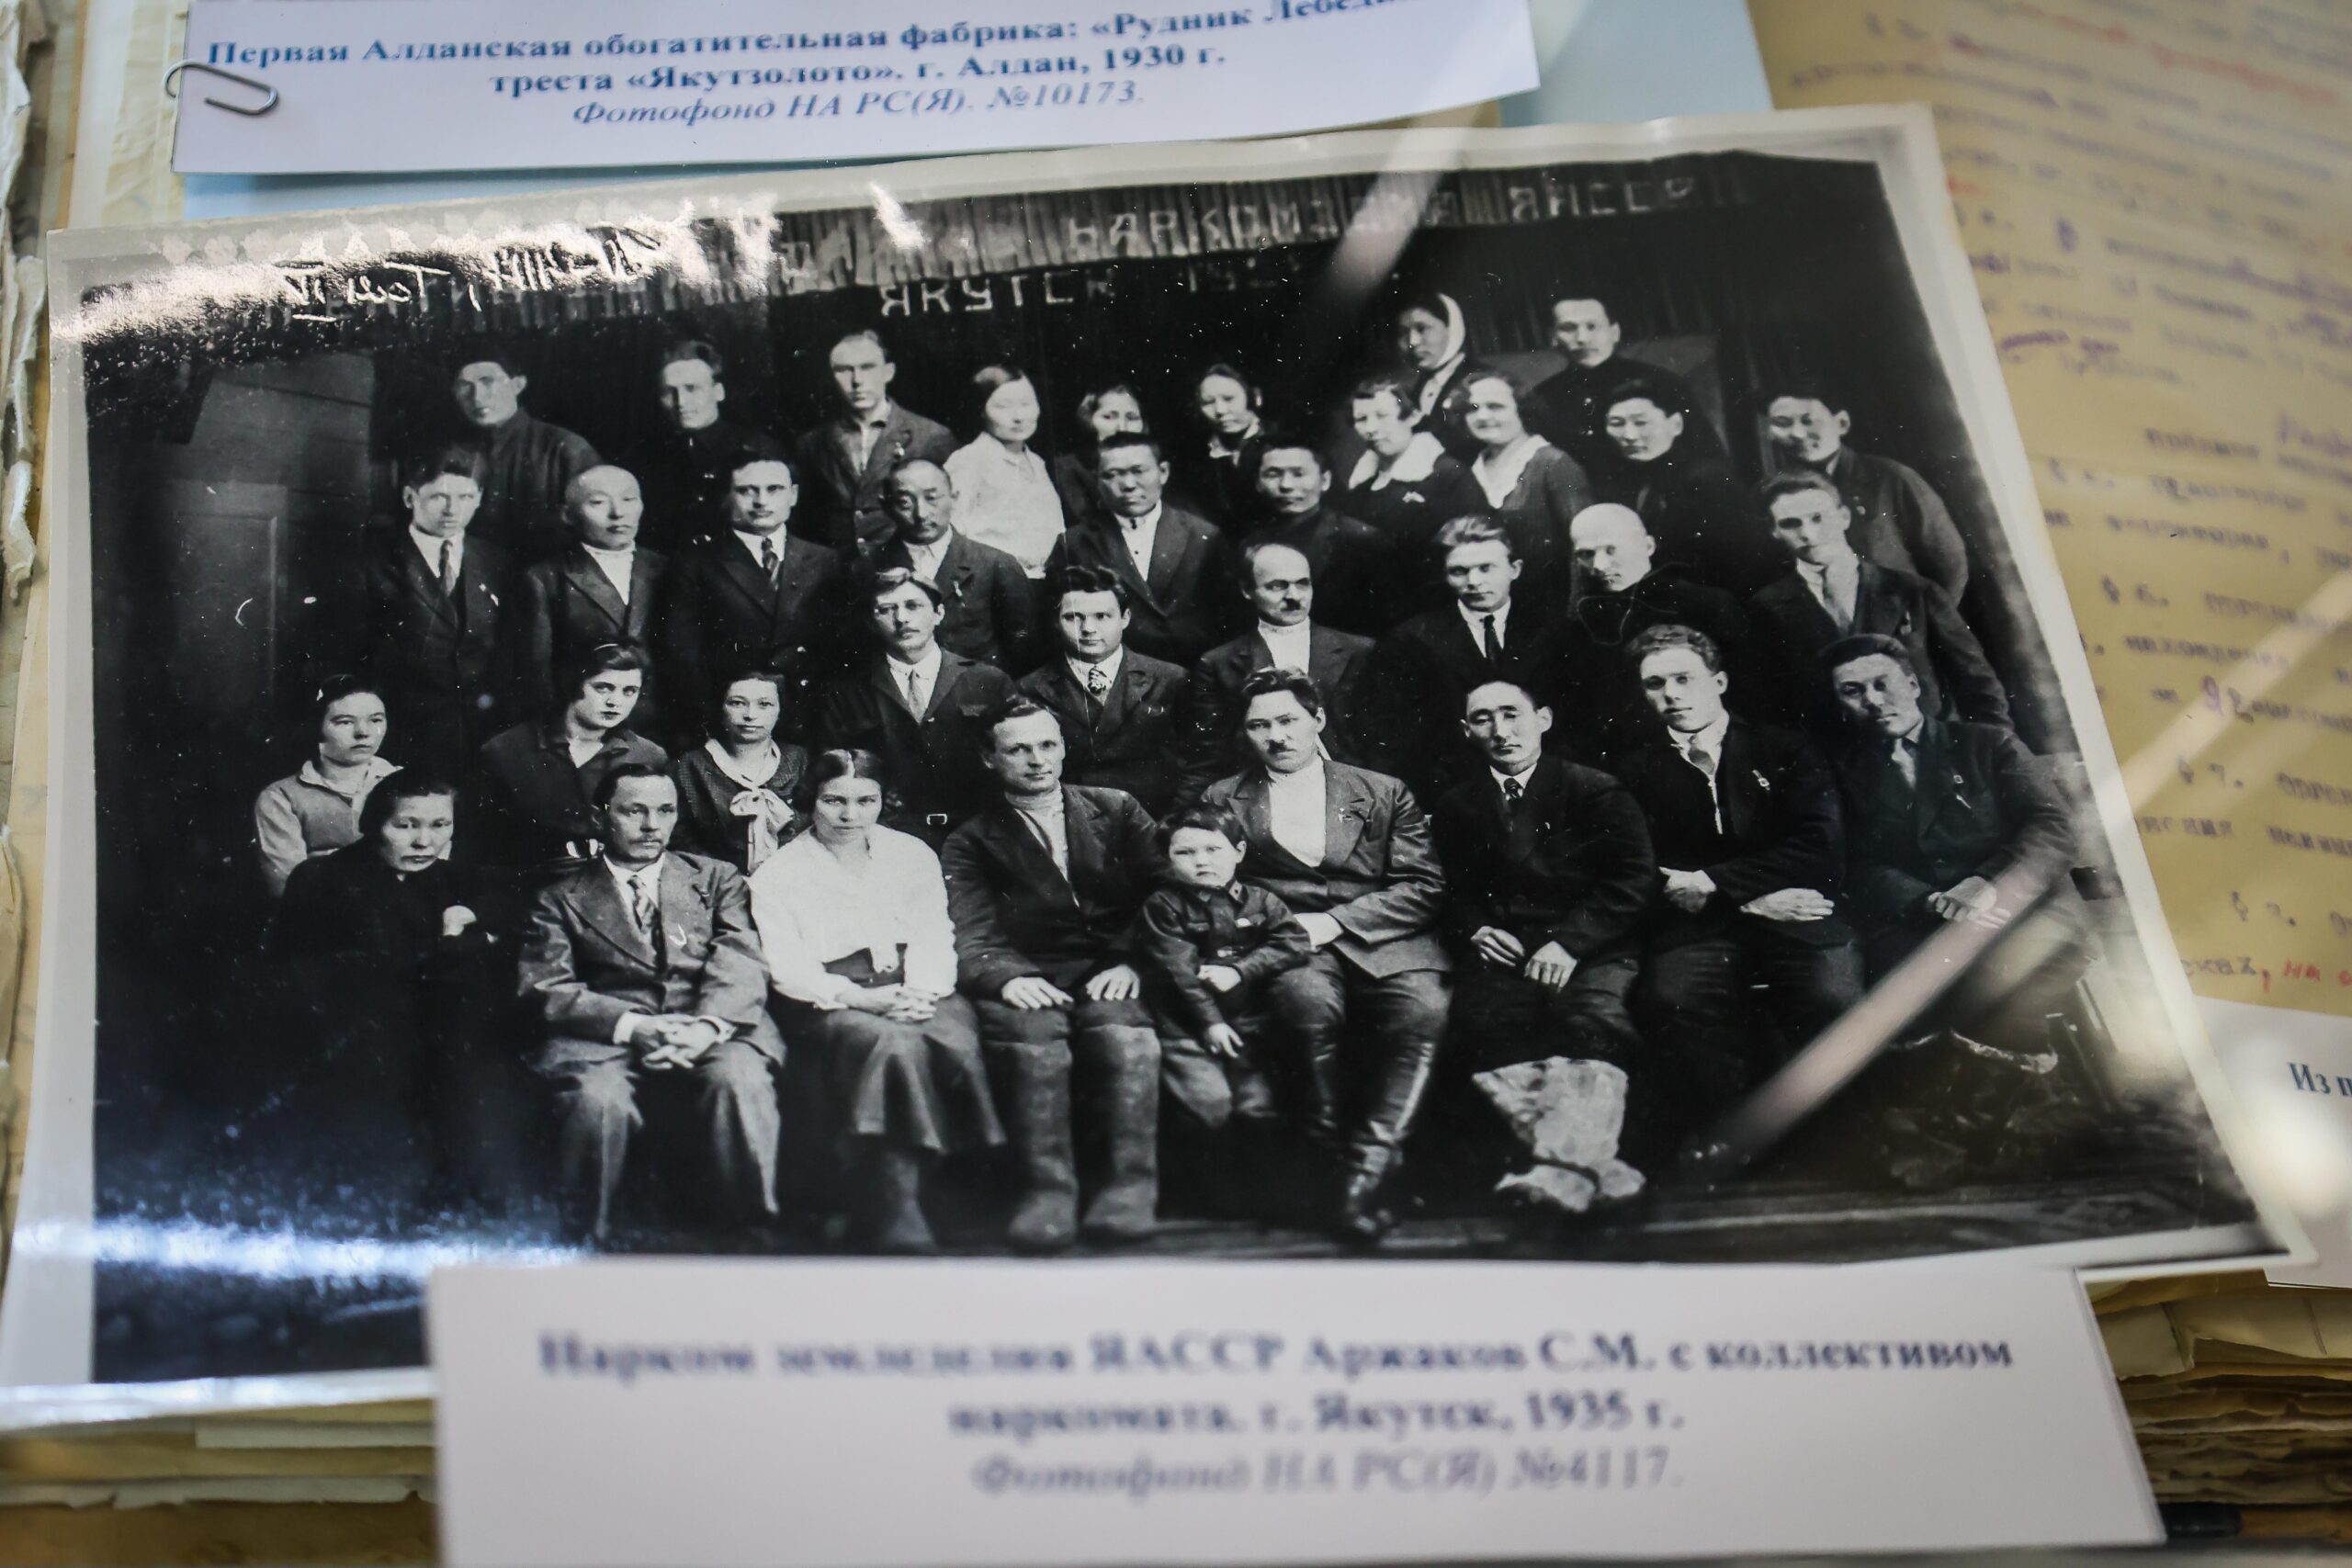 Архивные документы представят на выставке в честь столетия ЯАССР в Якутске